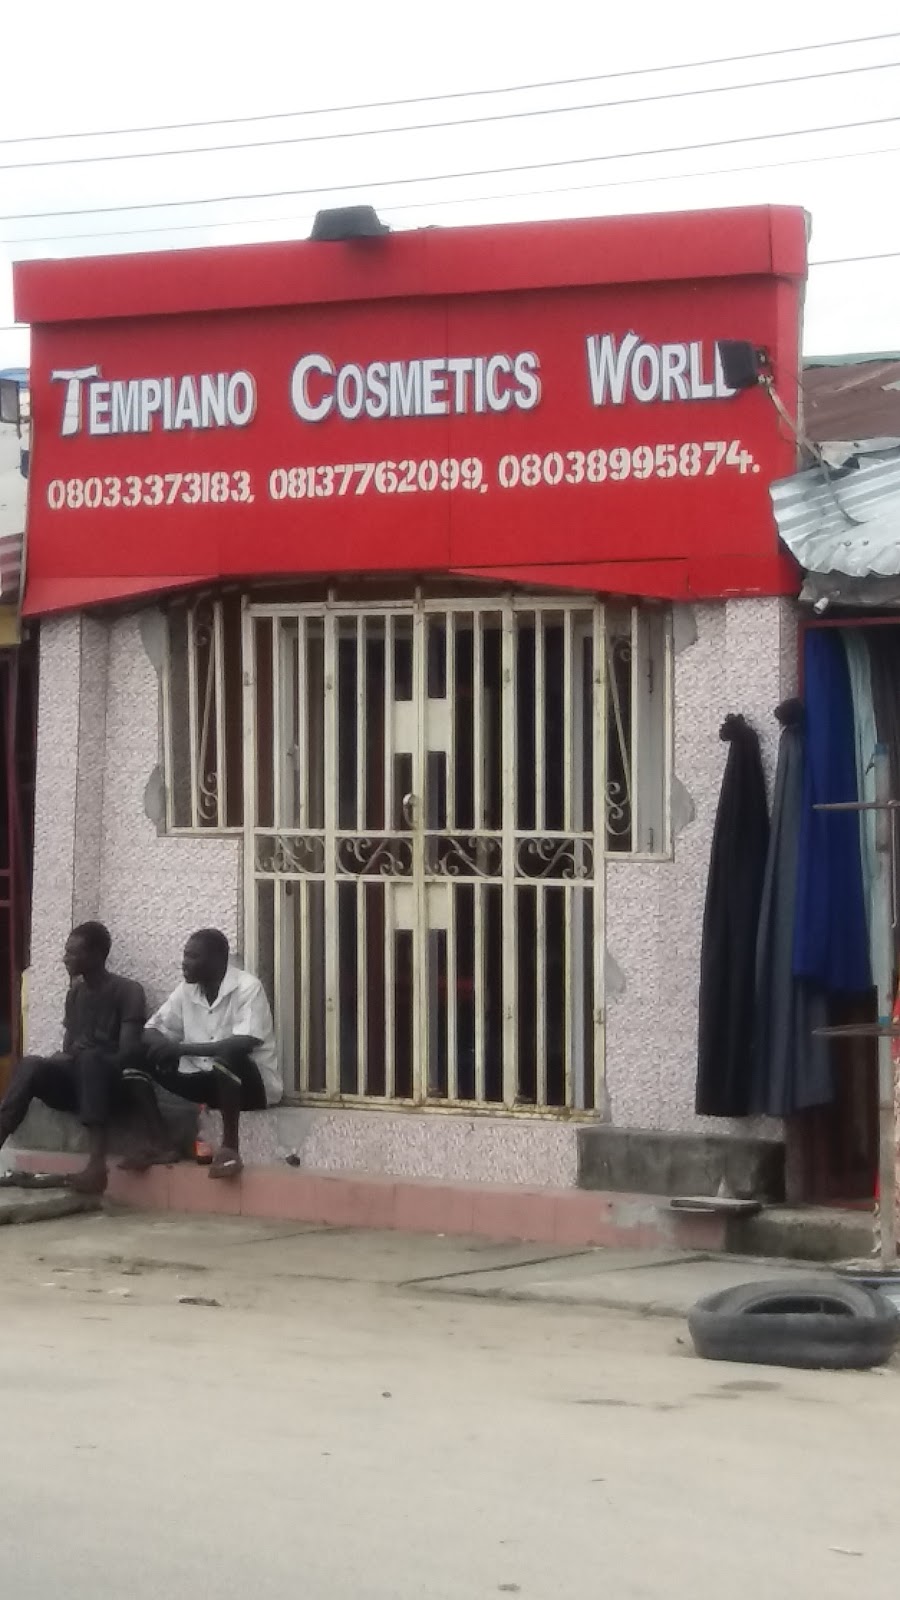 Tempiano Cosmetics World